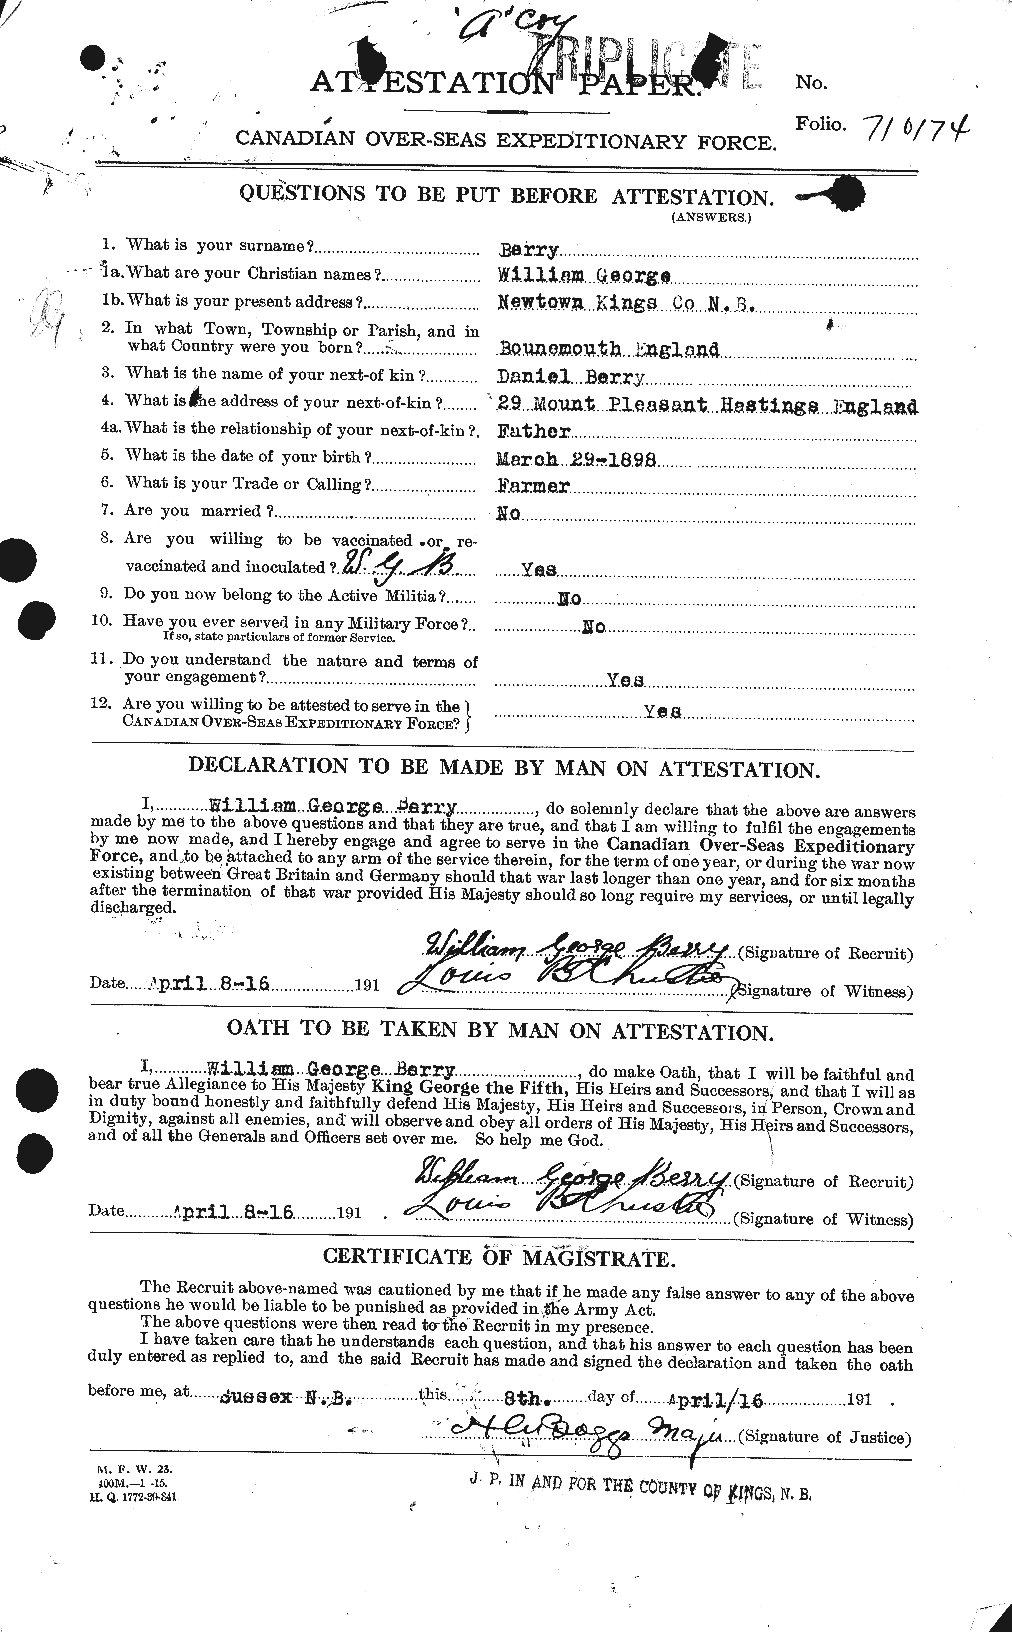 Dossiers du Personnel de la Première Guerre mondiale - CEC 235499a